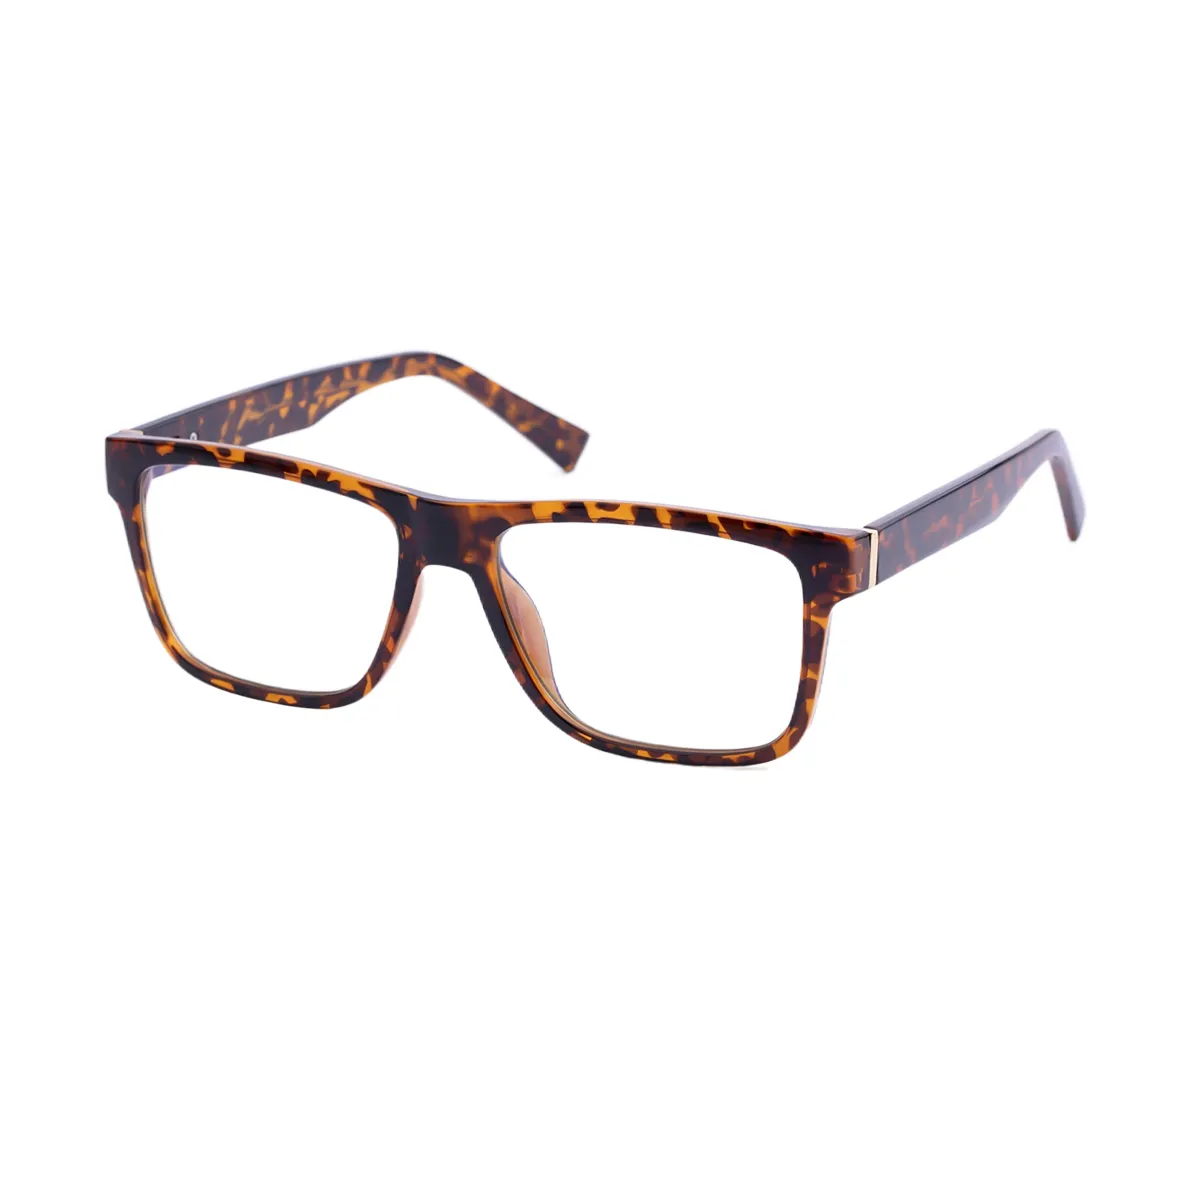 Alex - Square Tortoiseshell Glasses for Men - EFE